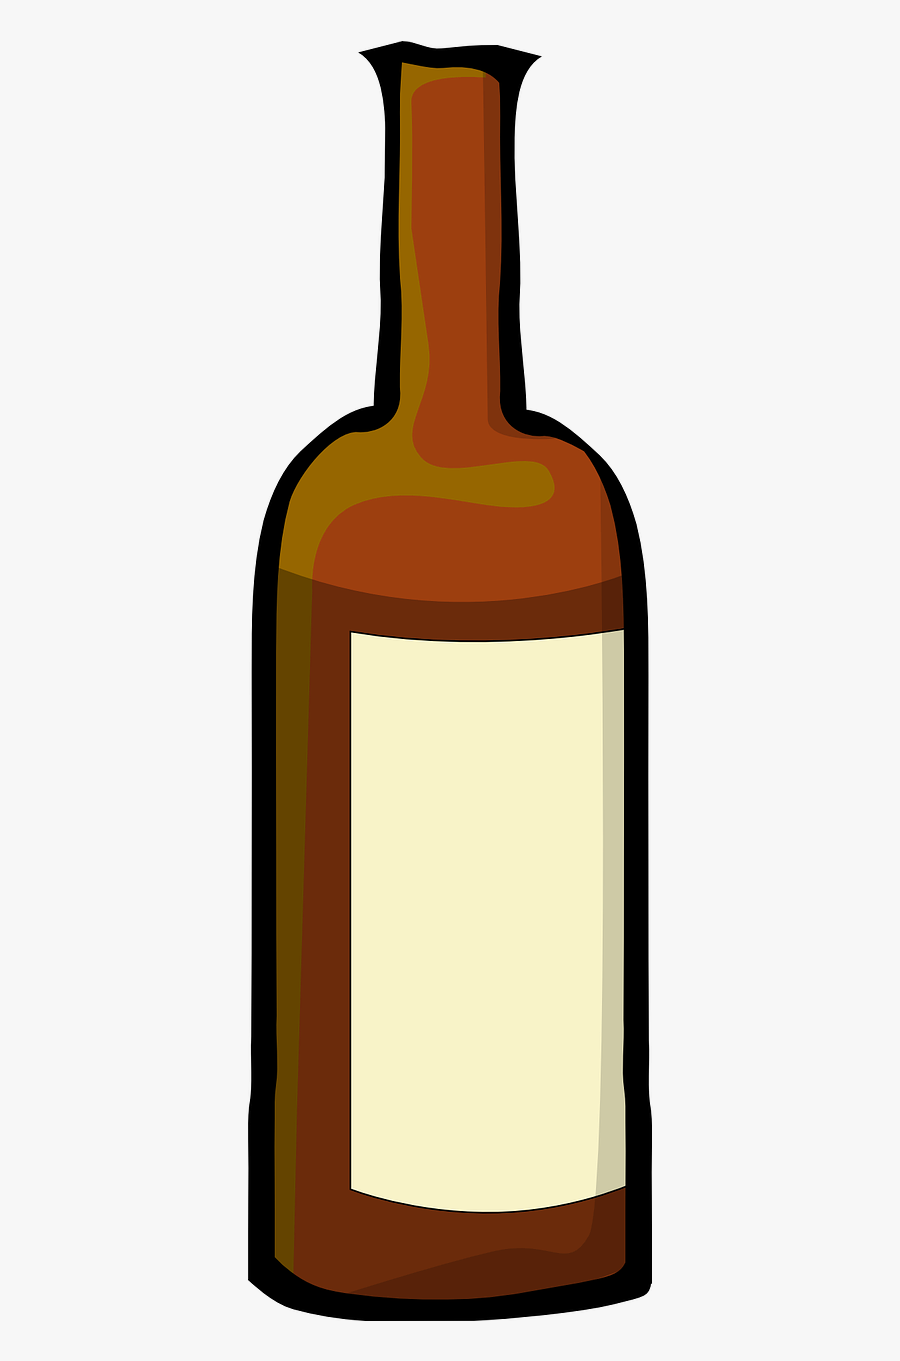 Liquor Bottle Drink Free Picture - Wine Bottle Clip Art, Transparent Clipart